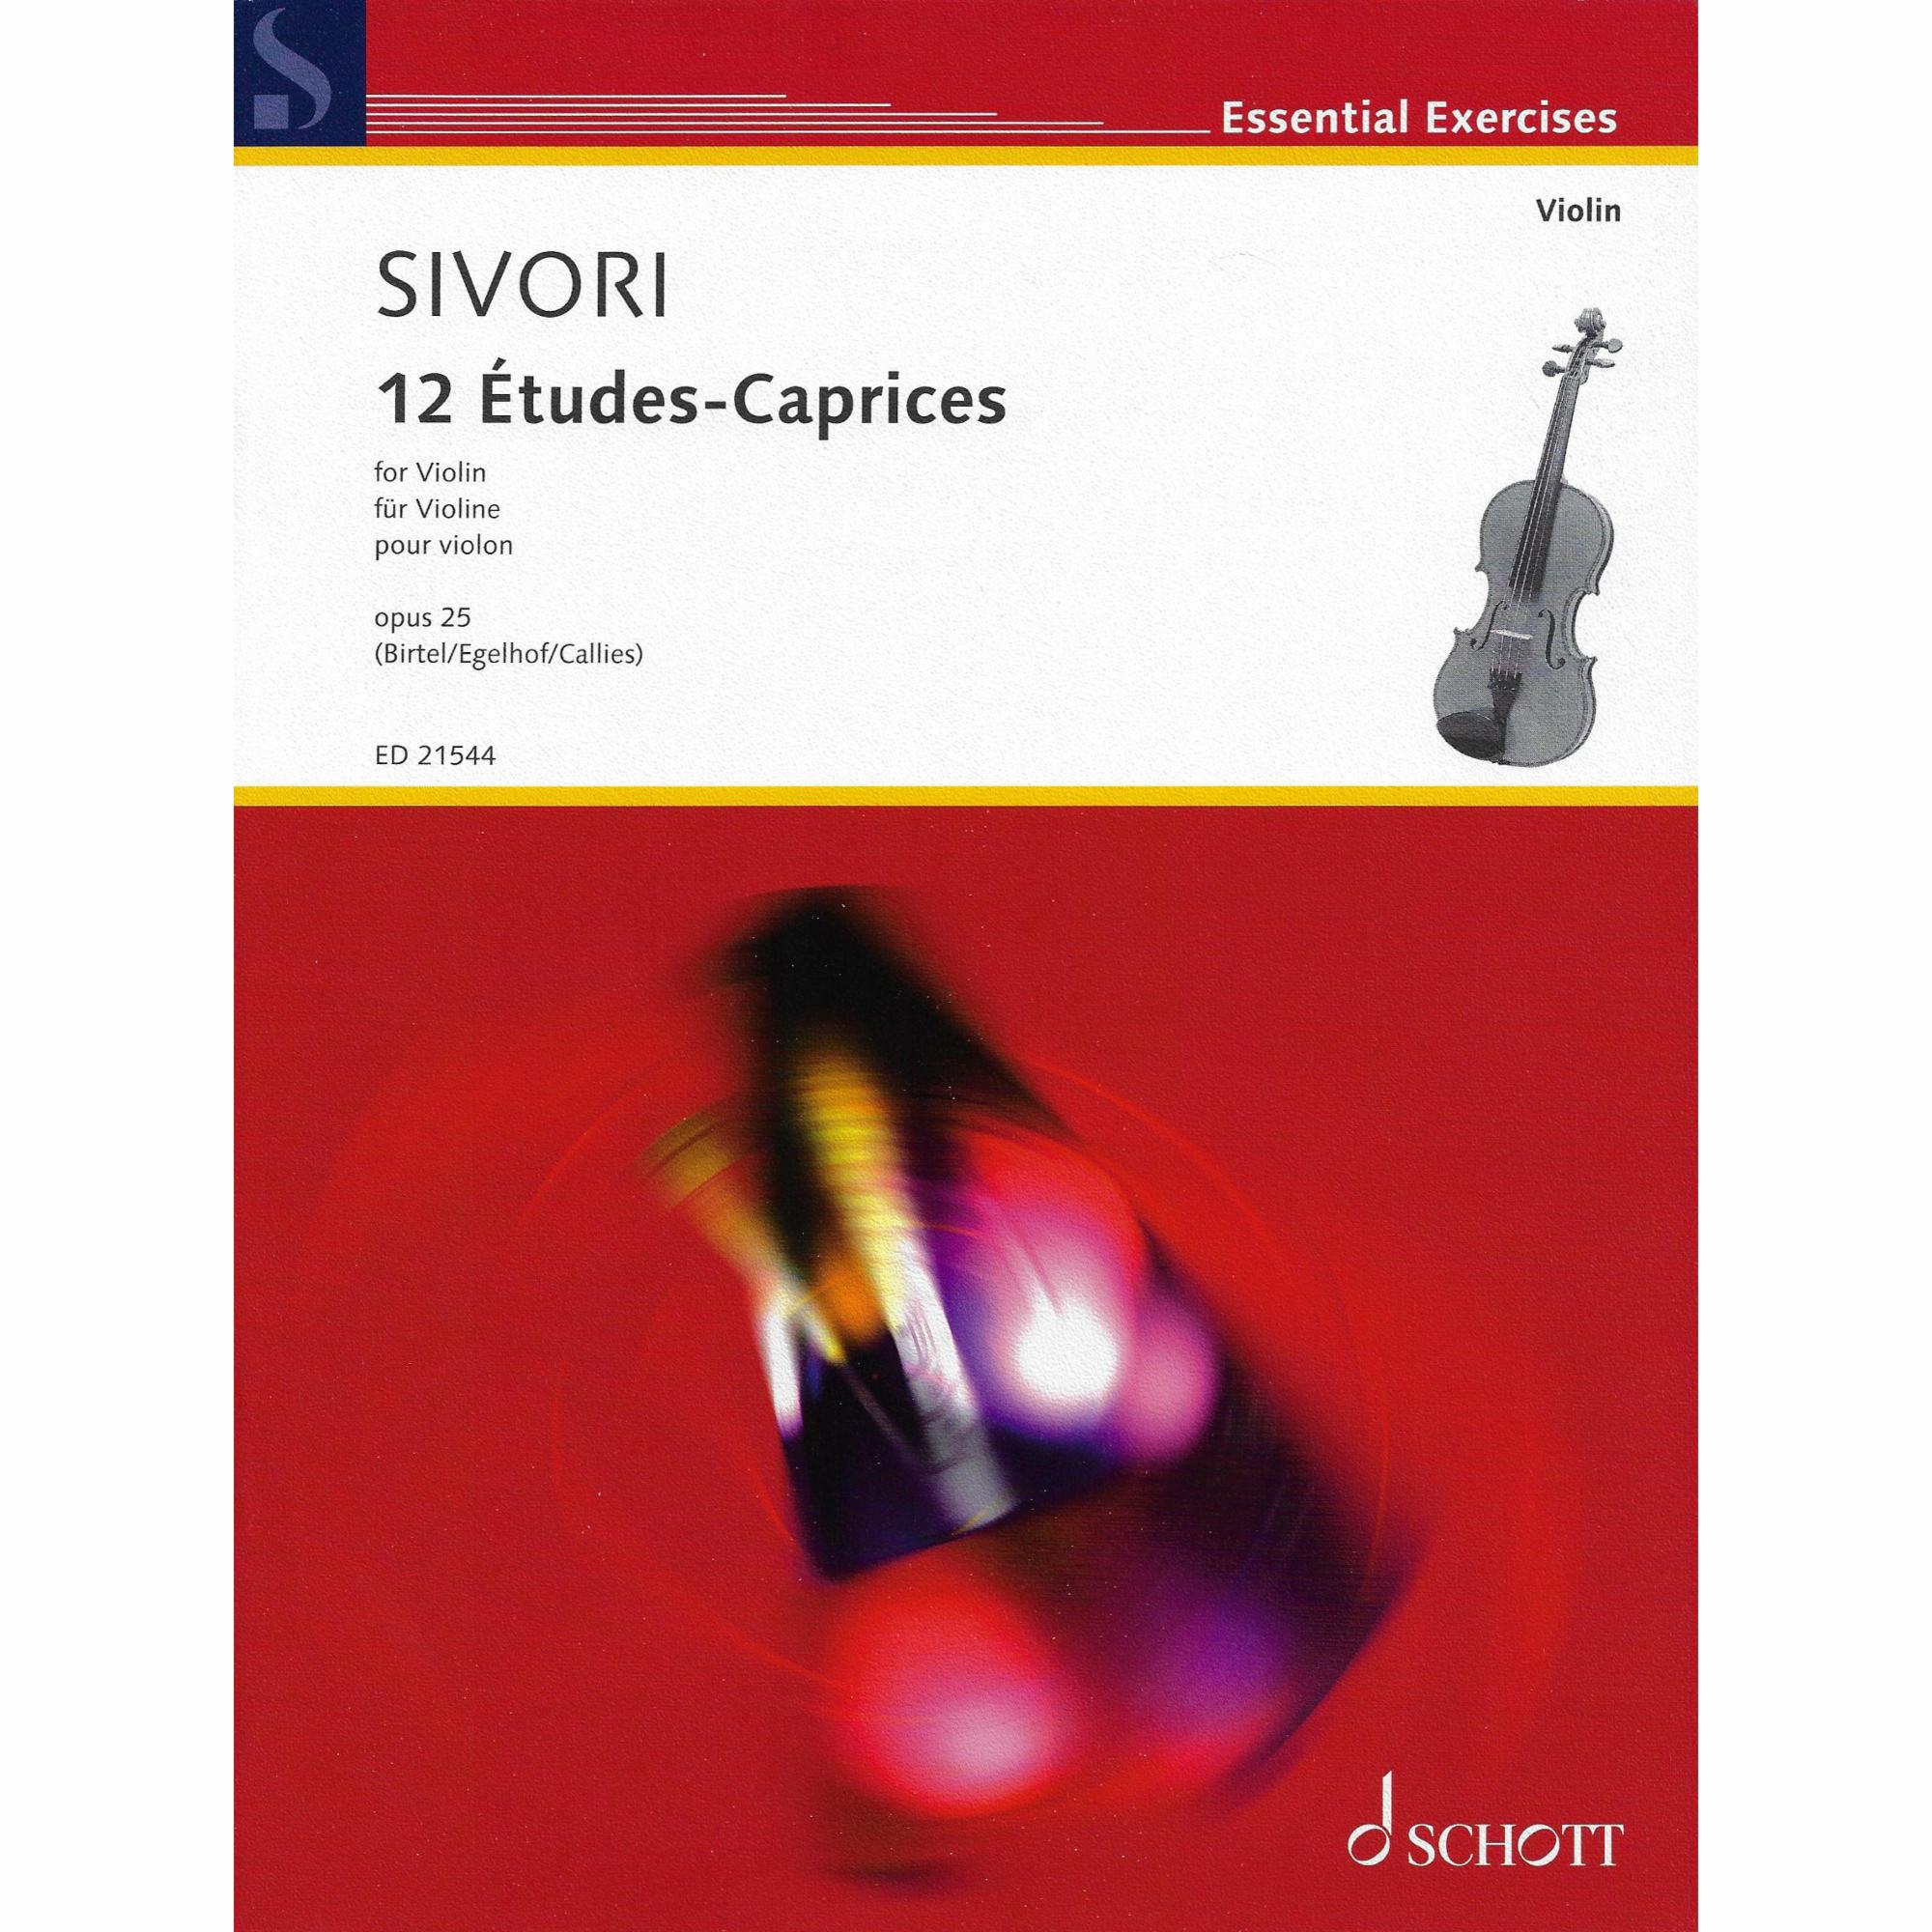 Sivori -- 12 Etudes-Caprices, Op. 25 for Violin